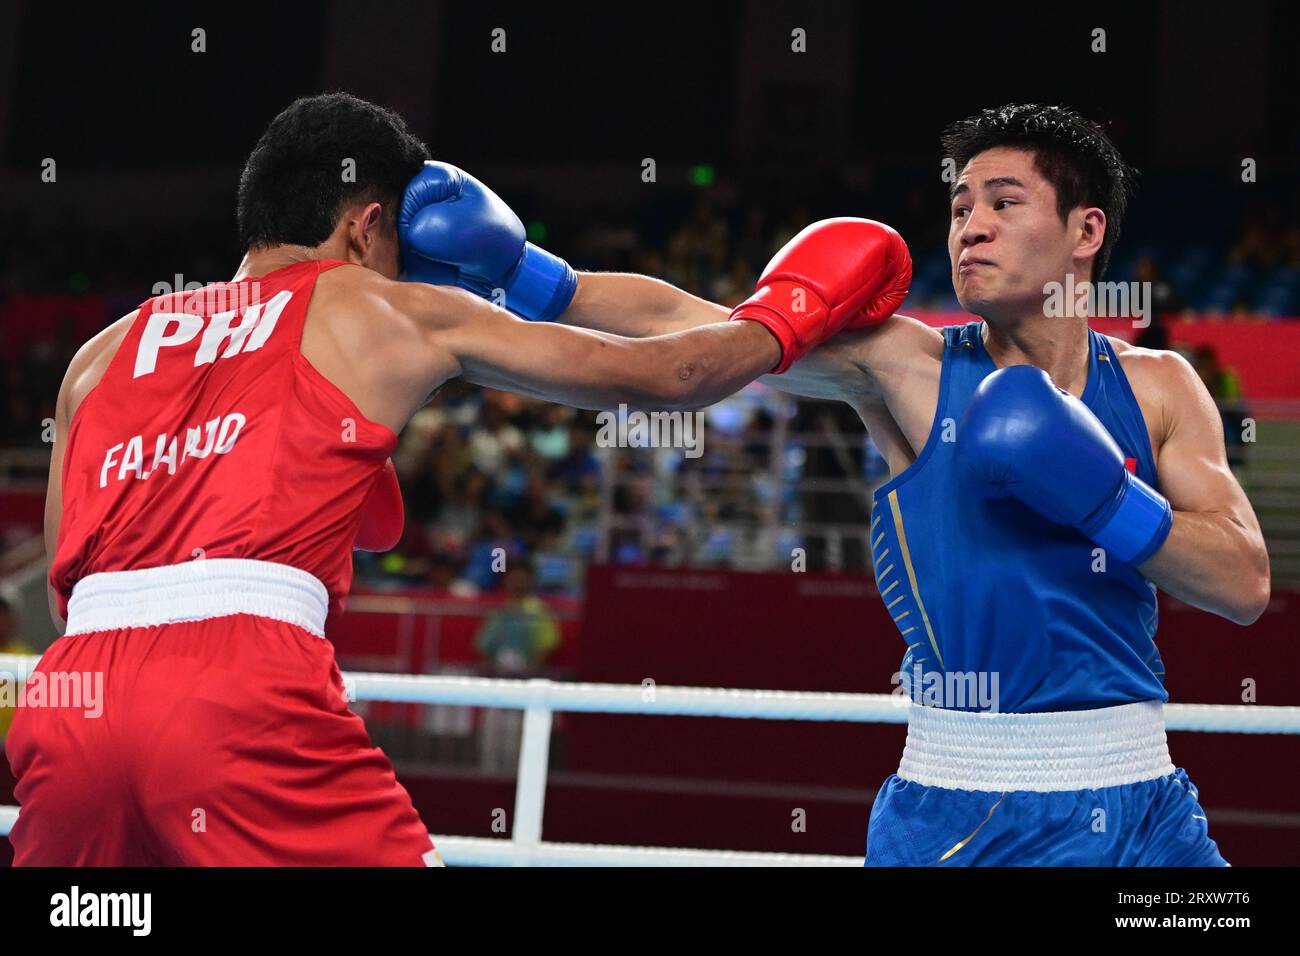 Mark Ashley Fajardo (à gauche) des Philippines et Xiangyang Wang de Chine (à droite) sont vus lors de la ronde de boxe masculine de 57 16-63.5Kg des 19e Jeux asiatiques qui a lieu au gymnase de Hangzhou. Wang est le vainqueur au point 5-0. Banque D'Images